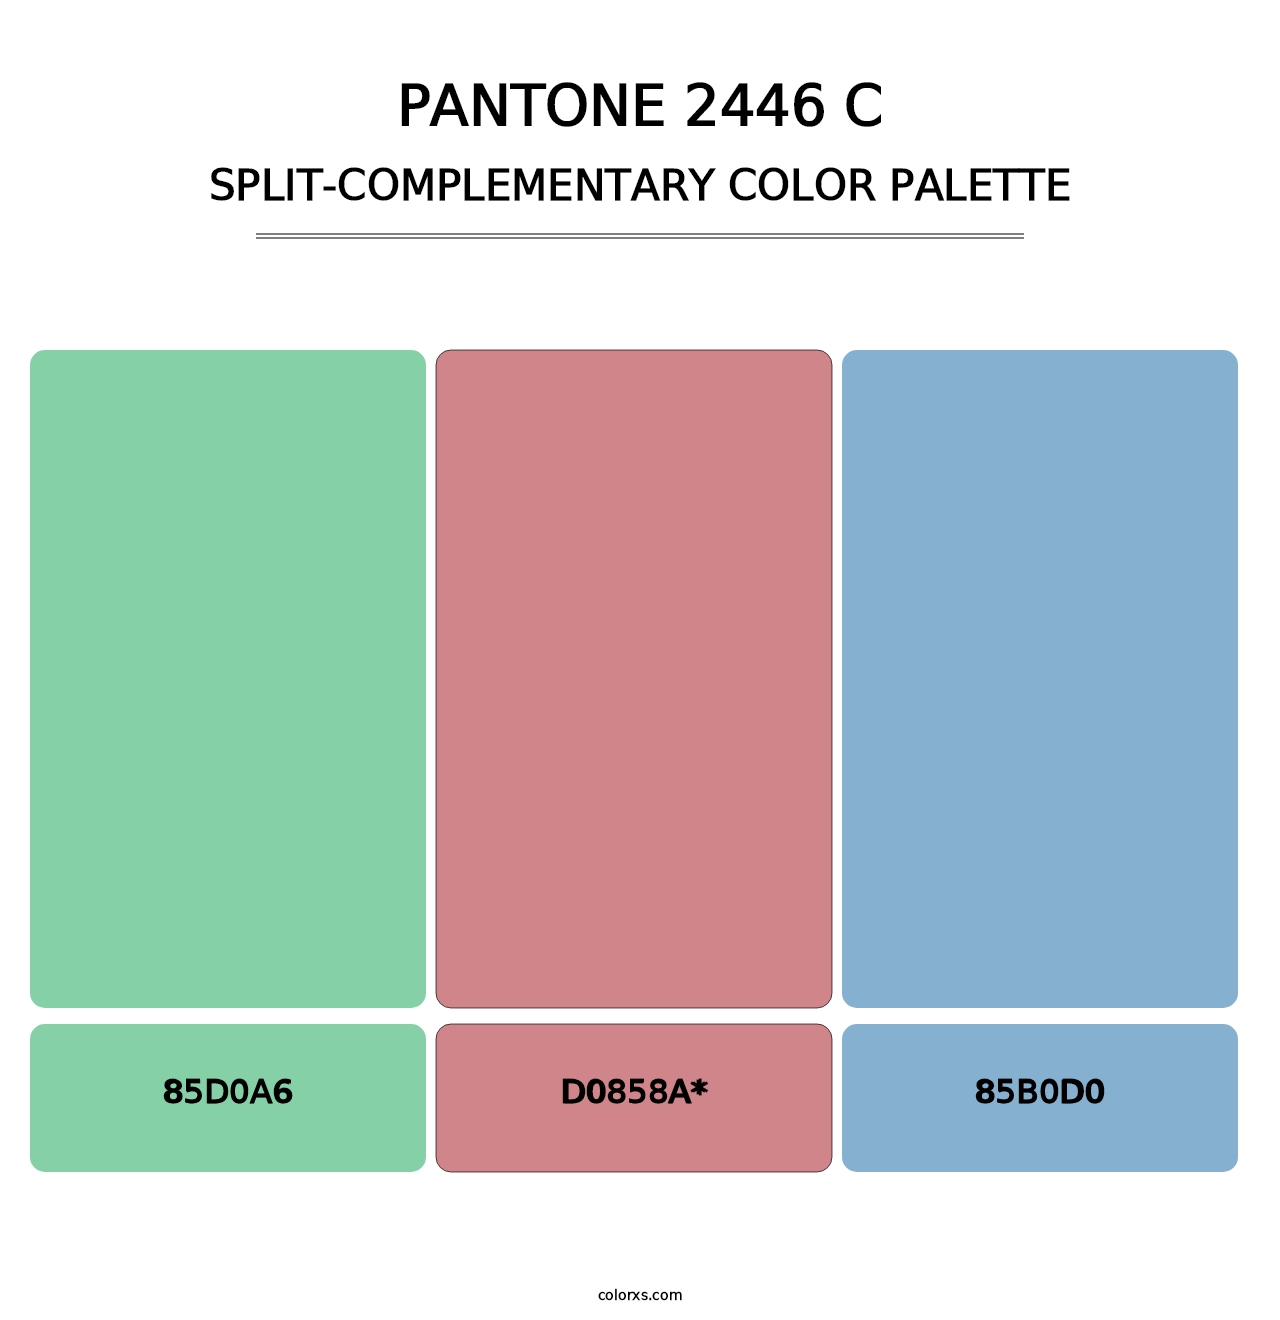 PANTONE 2446 C - Split-Complementary Color Palette